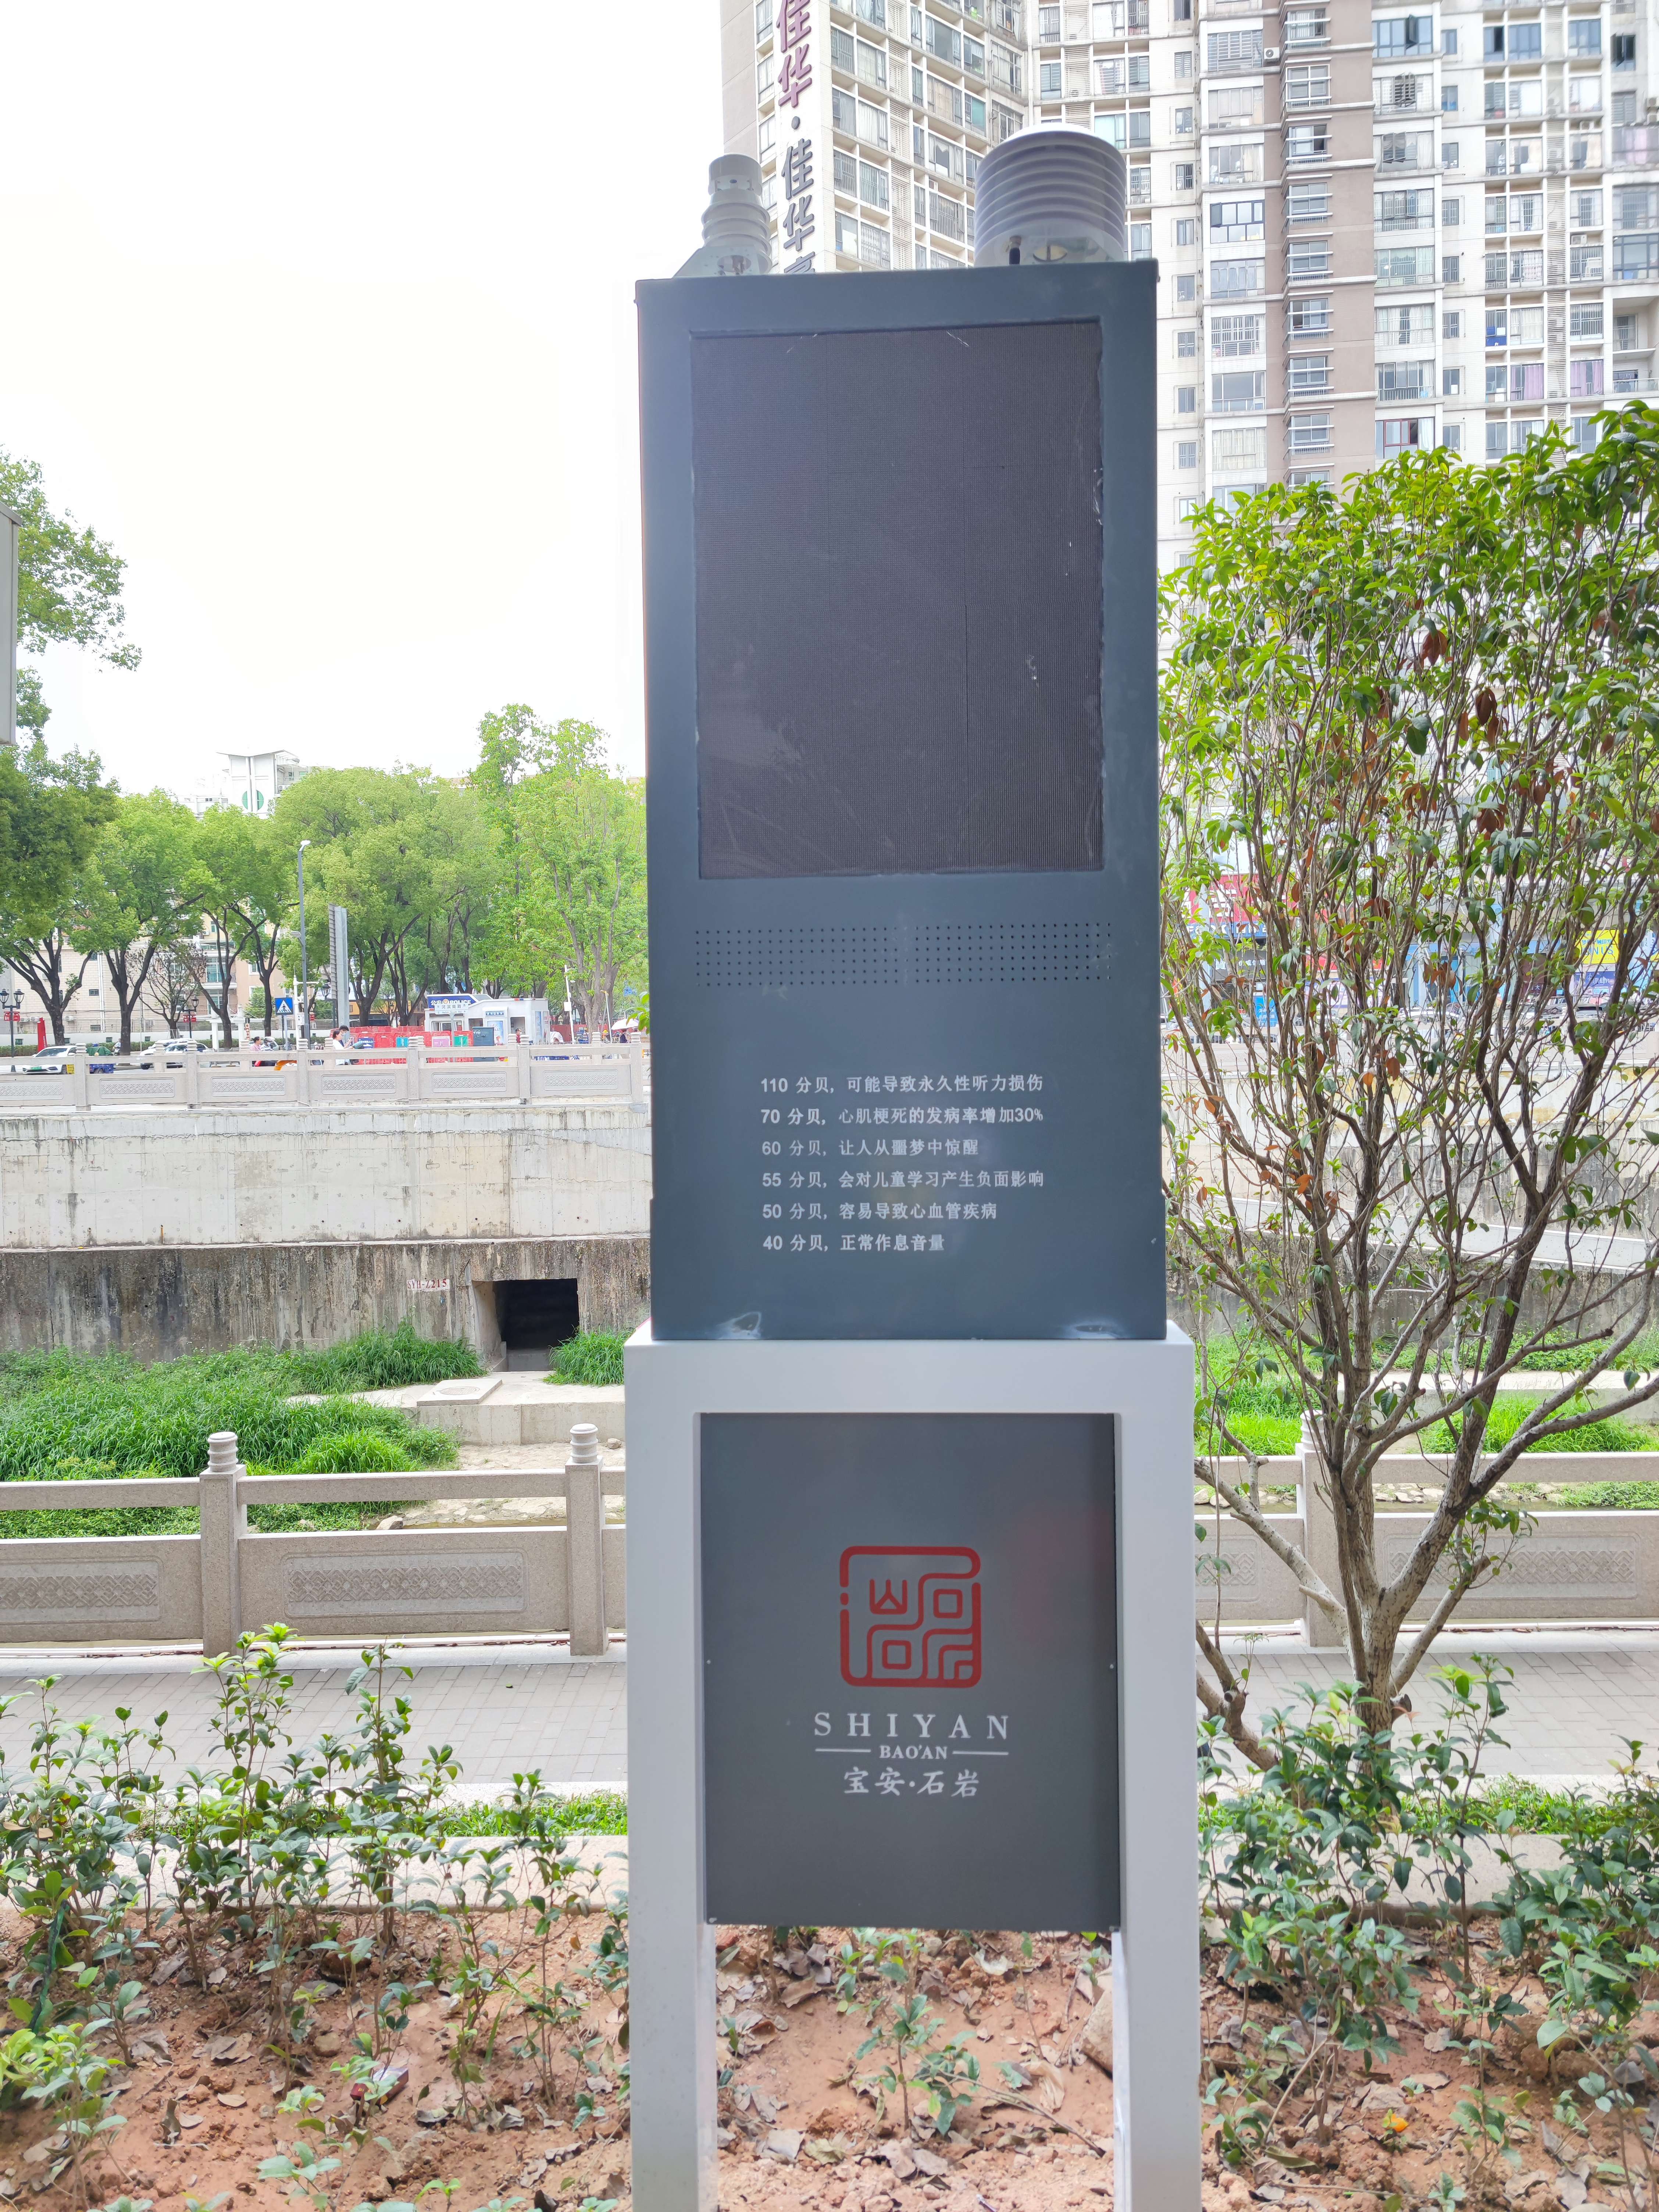 深圳商业街噪声超标喊话系统超标变色  可视化噪声超标喊话系统